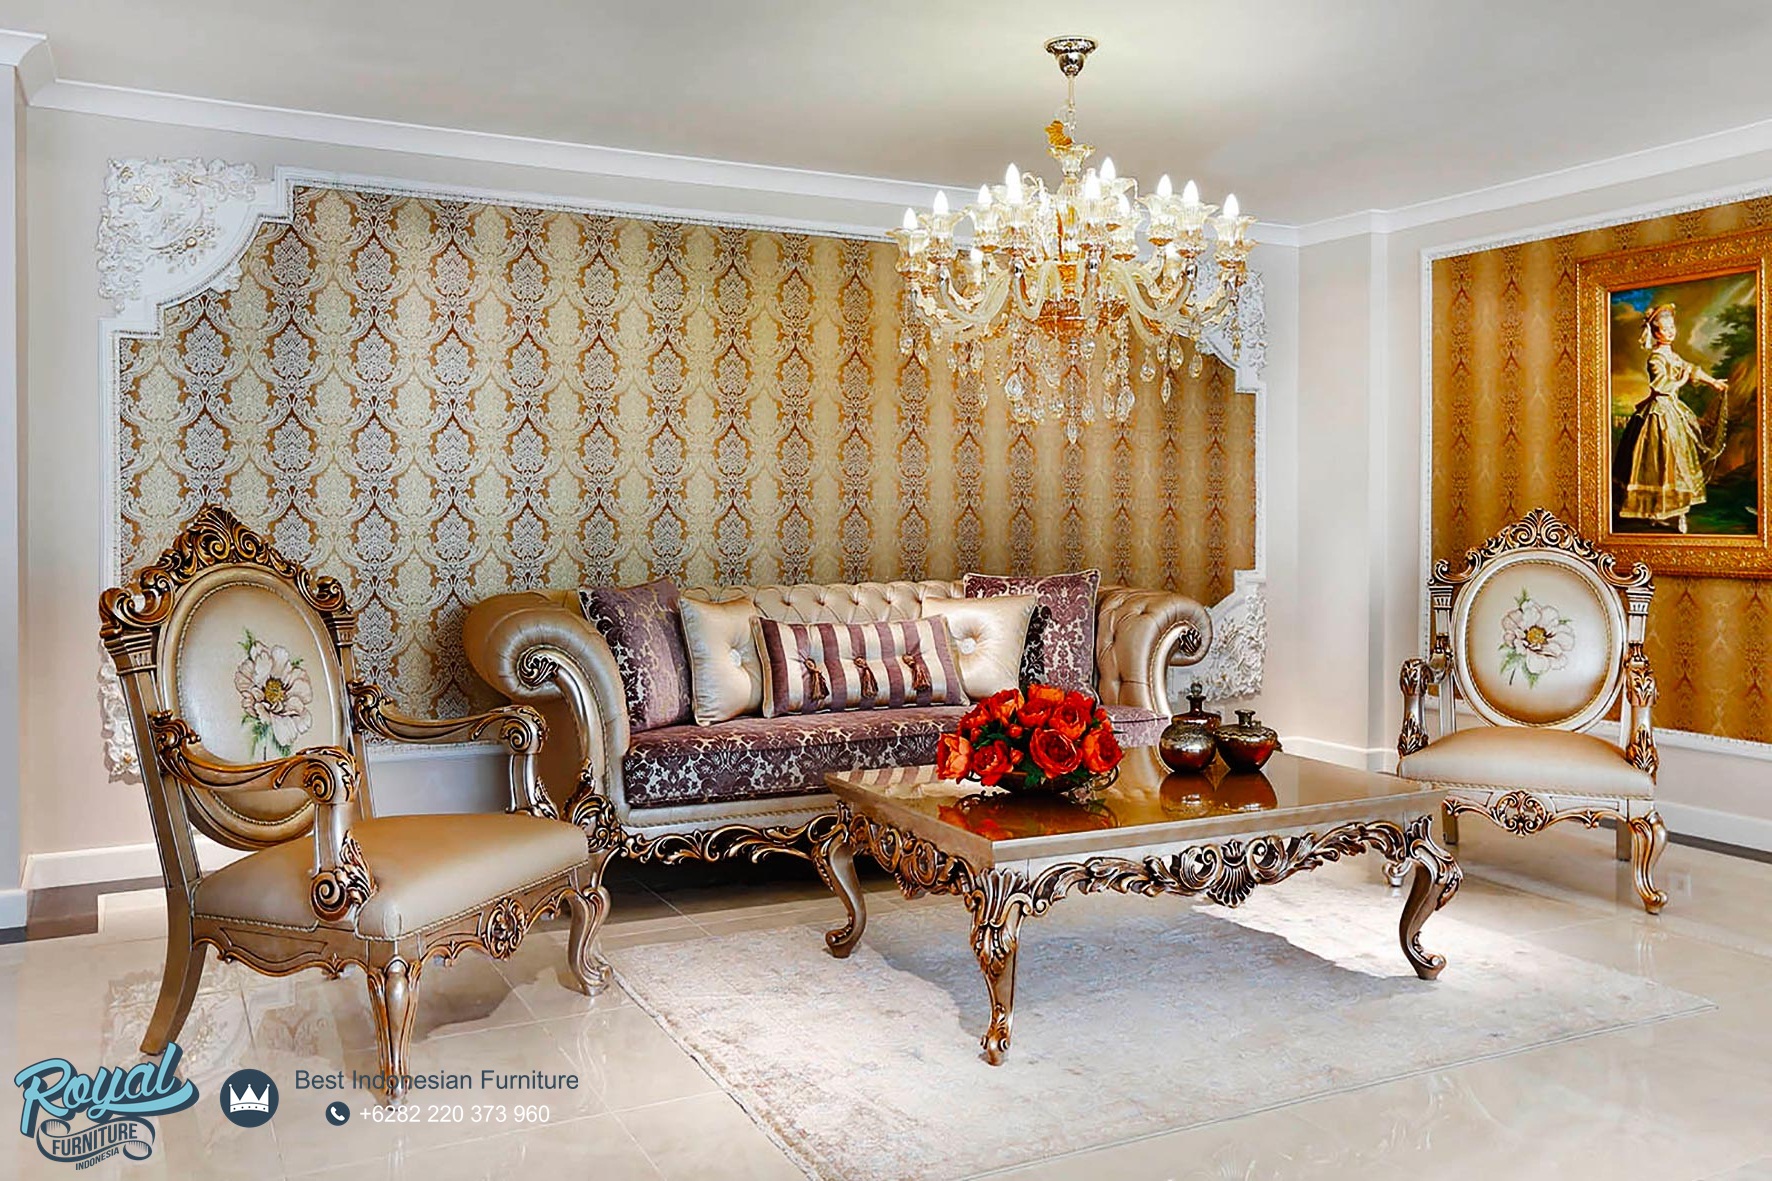 Set Sofa Tamu Mewah Klasik Chester Model Kursi Tamu Terbaru Royal